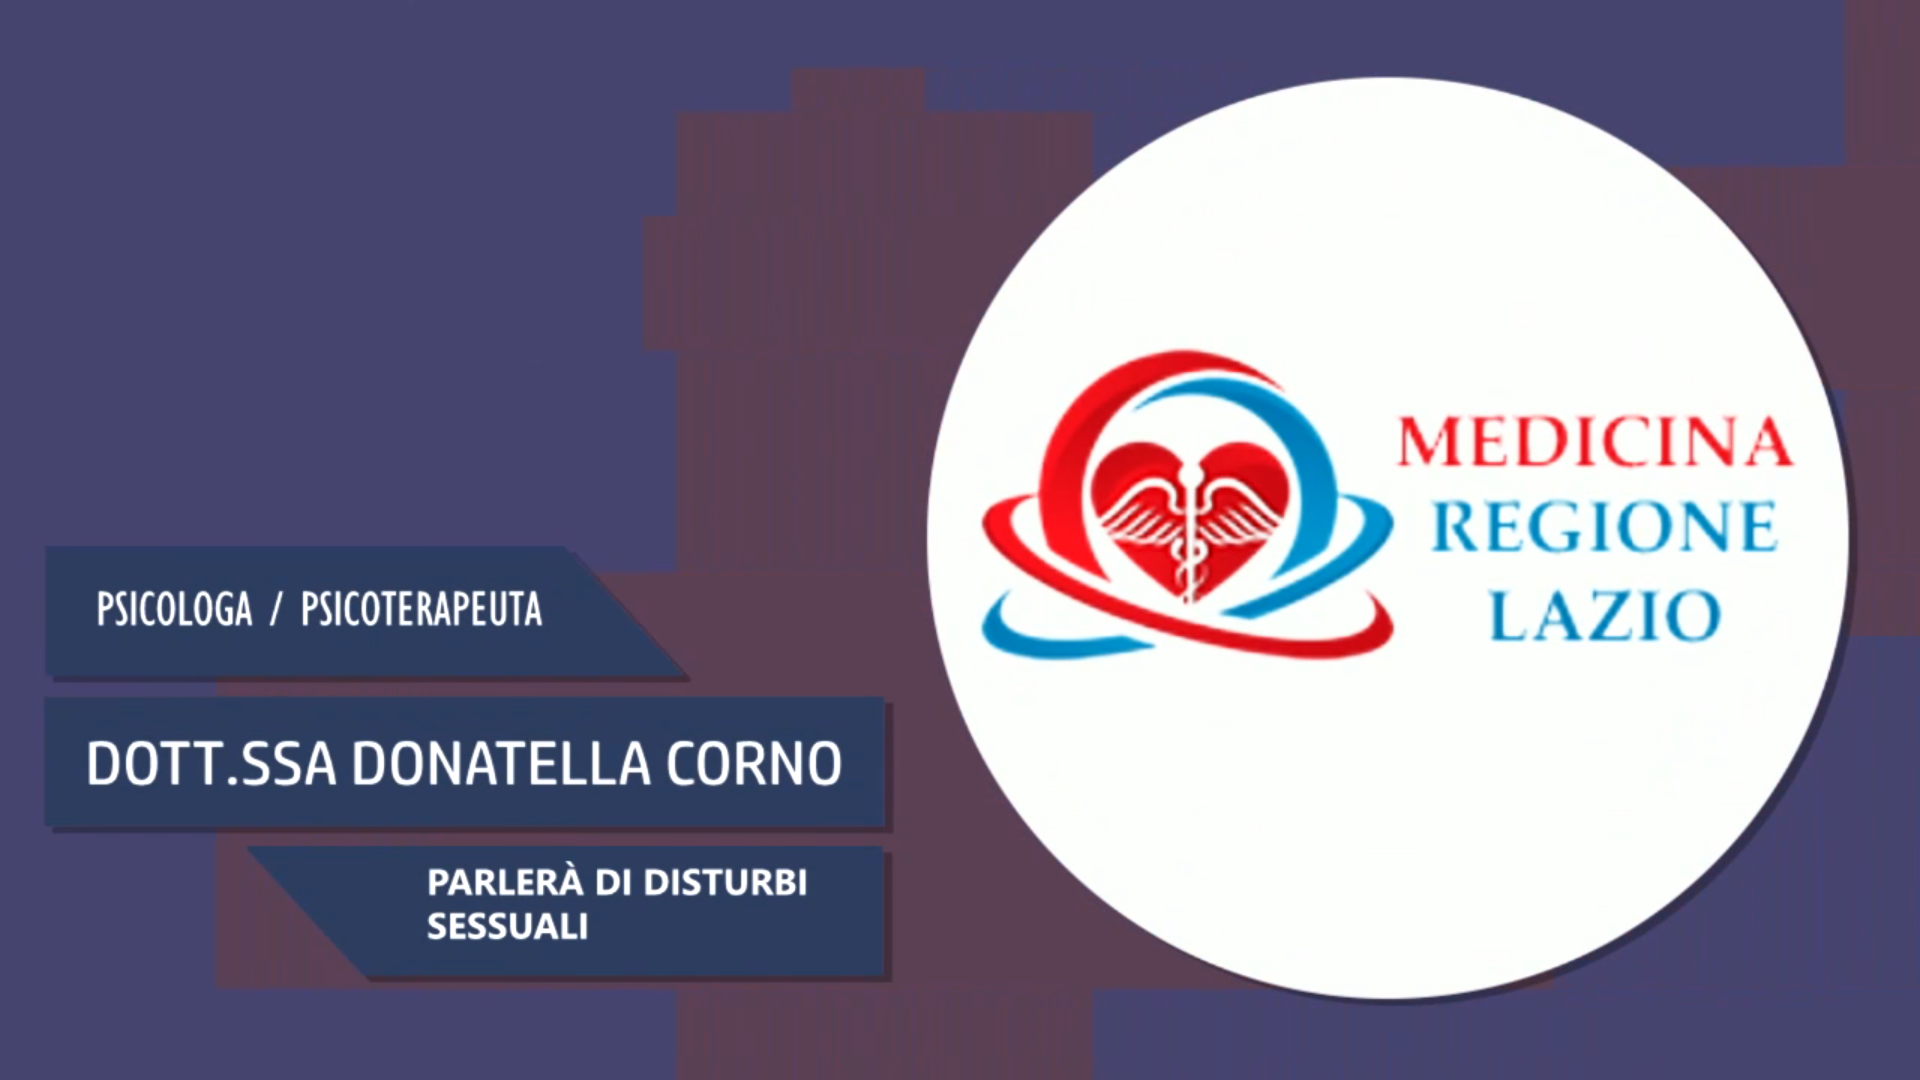 Intervista alla Dott.ssa Donatella Corno – Parlerà di disturbi sessuali